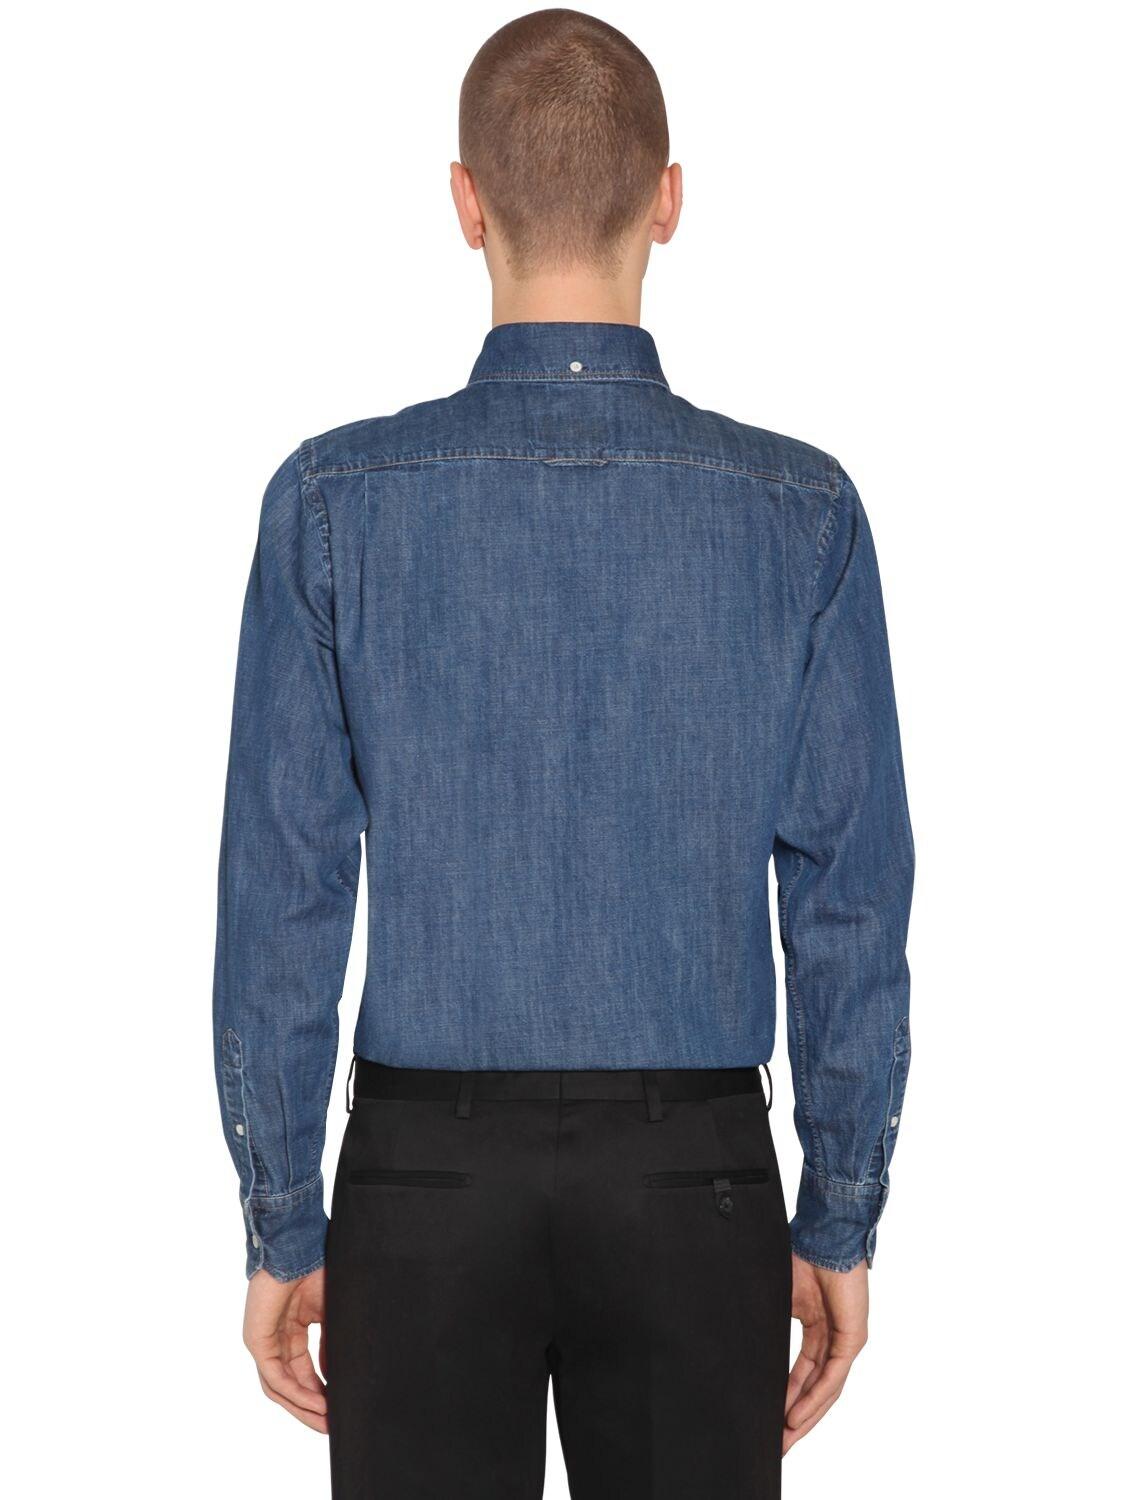 Prada Cotton Denim Button Down Shirt in Blue for Men - Lyst